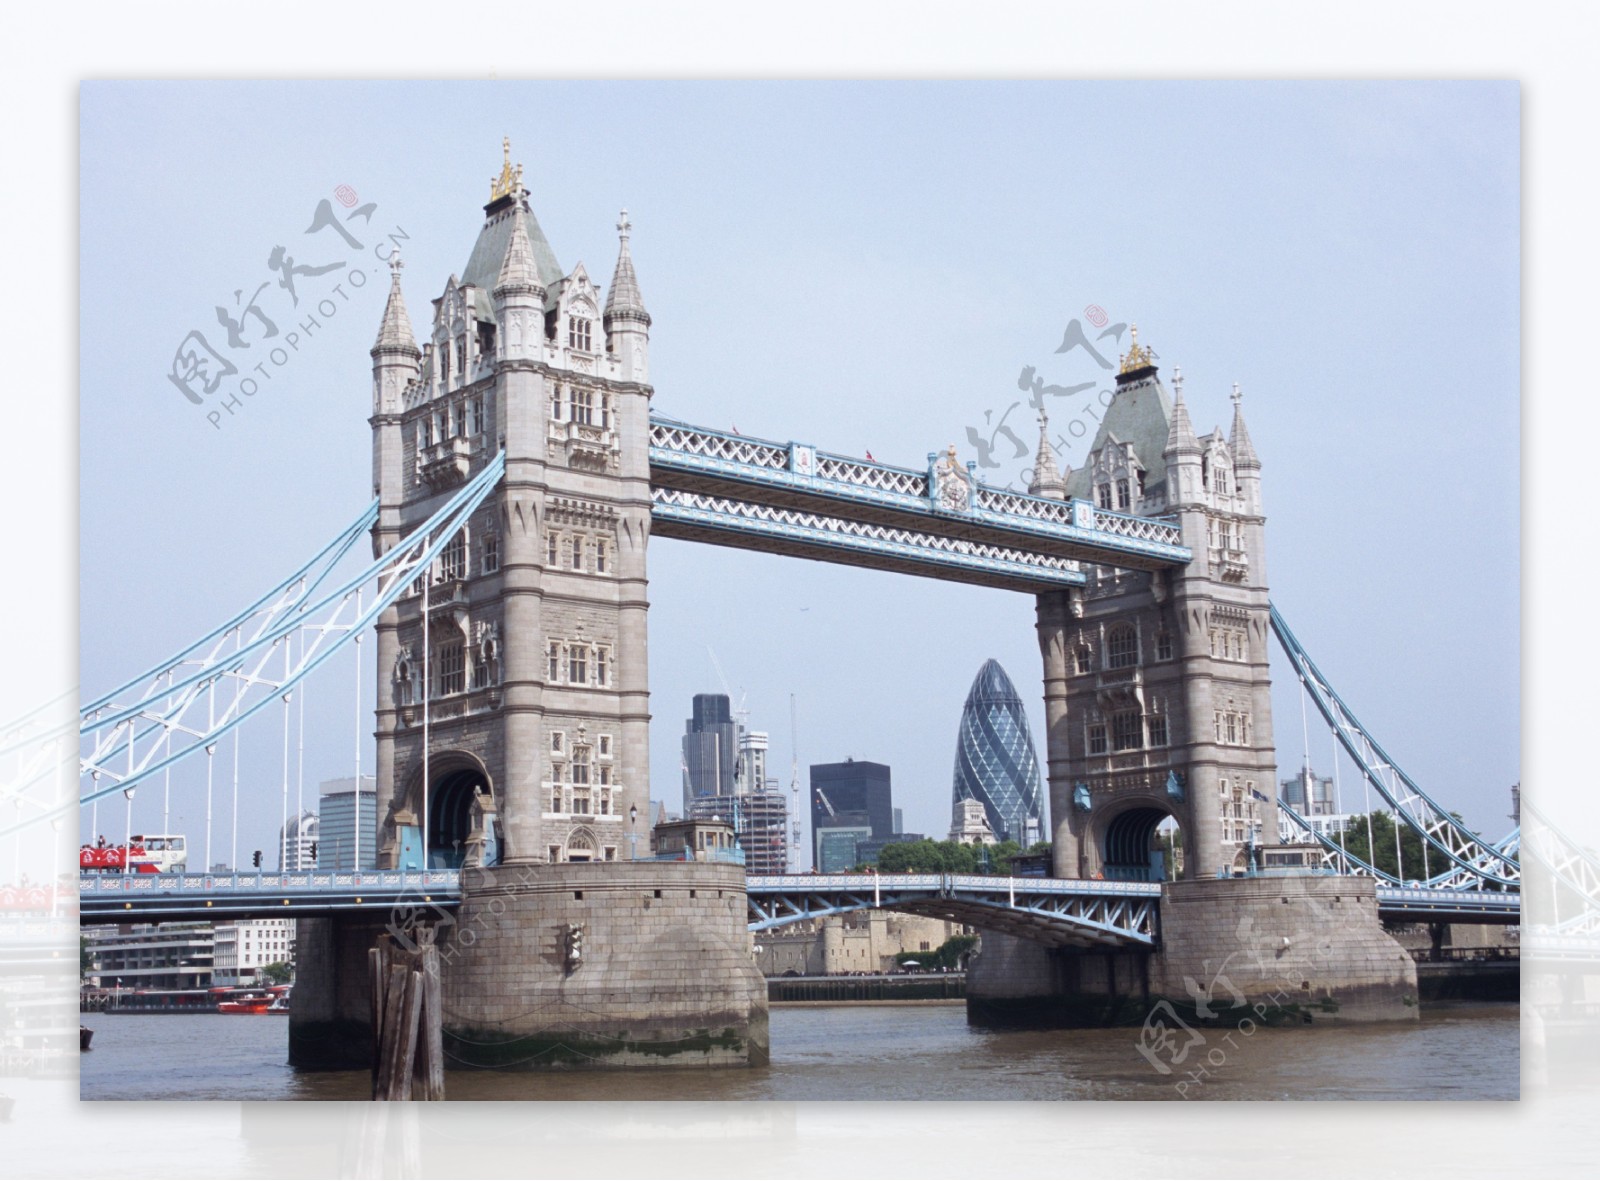 伦敦大桥图片